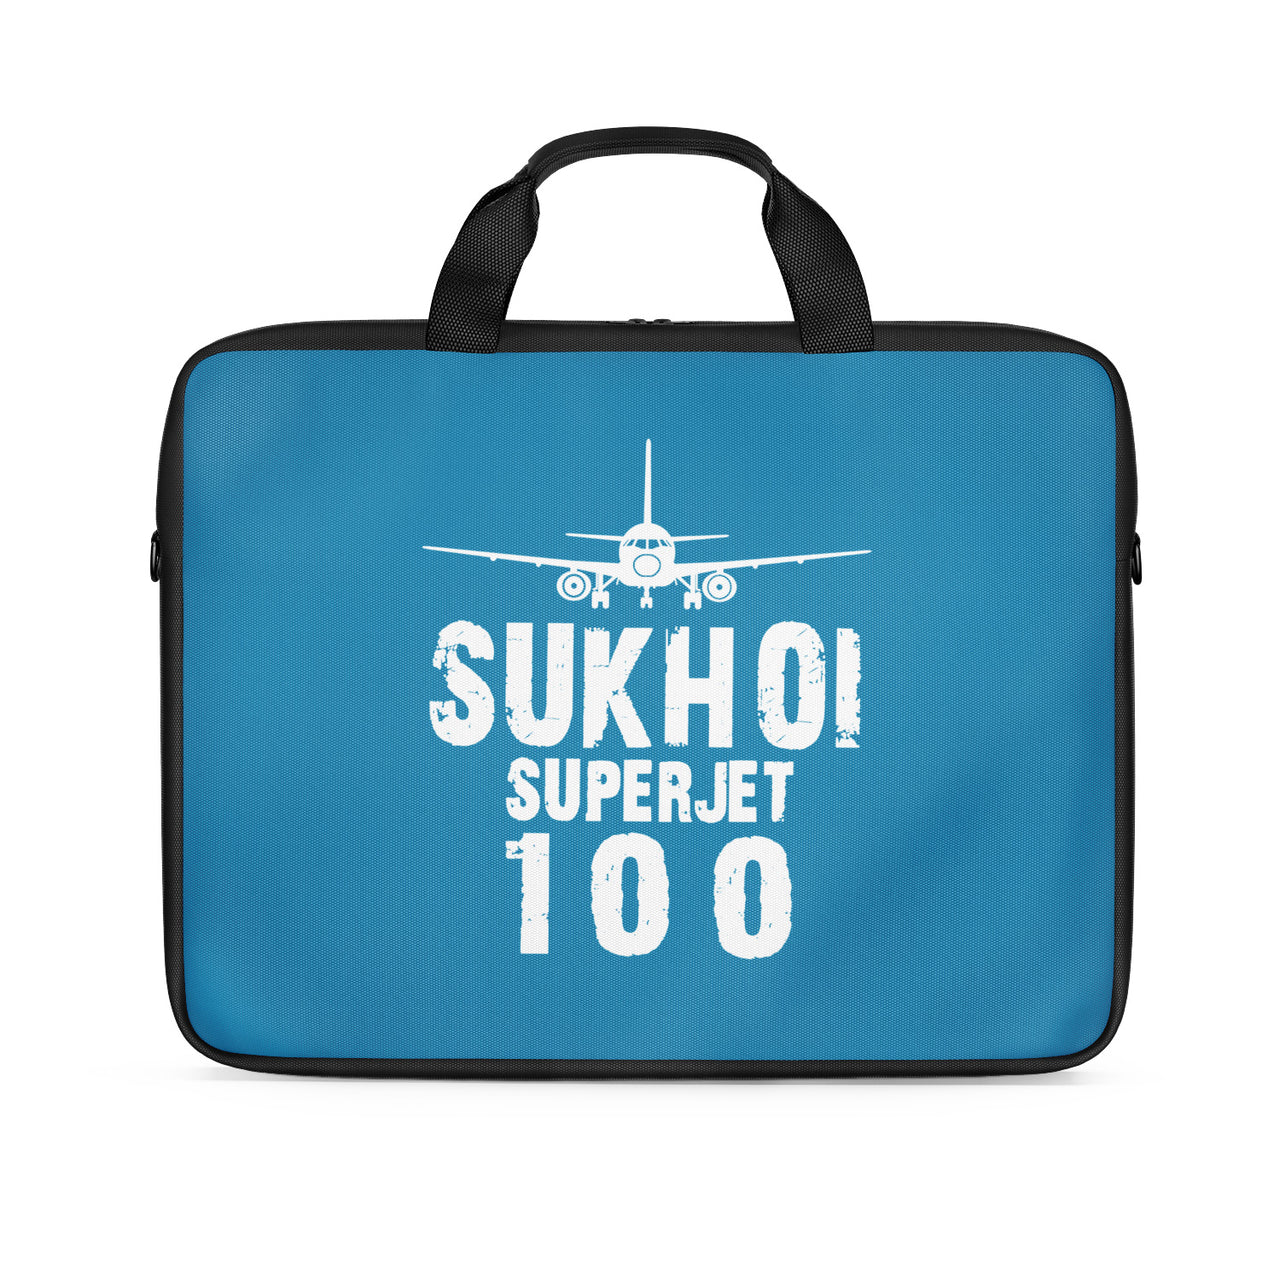 Sukhoi Superjet 100 & Plane Designed Laptop & Tablet Bags